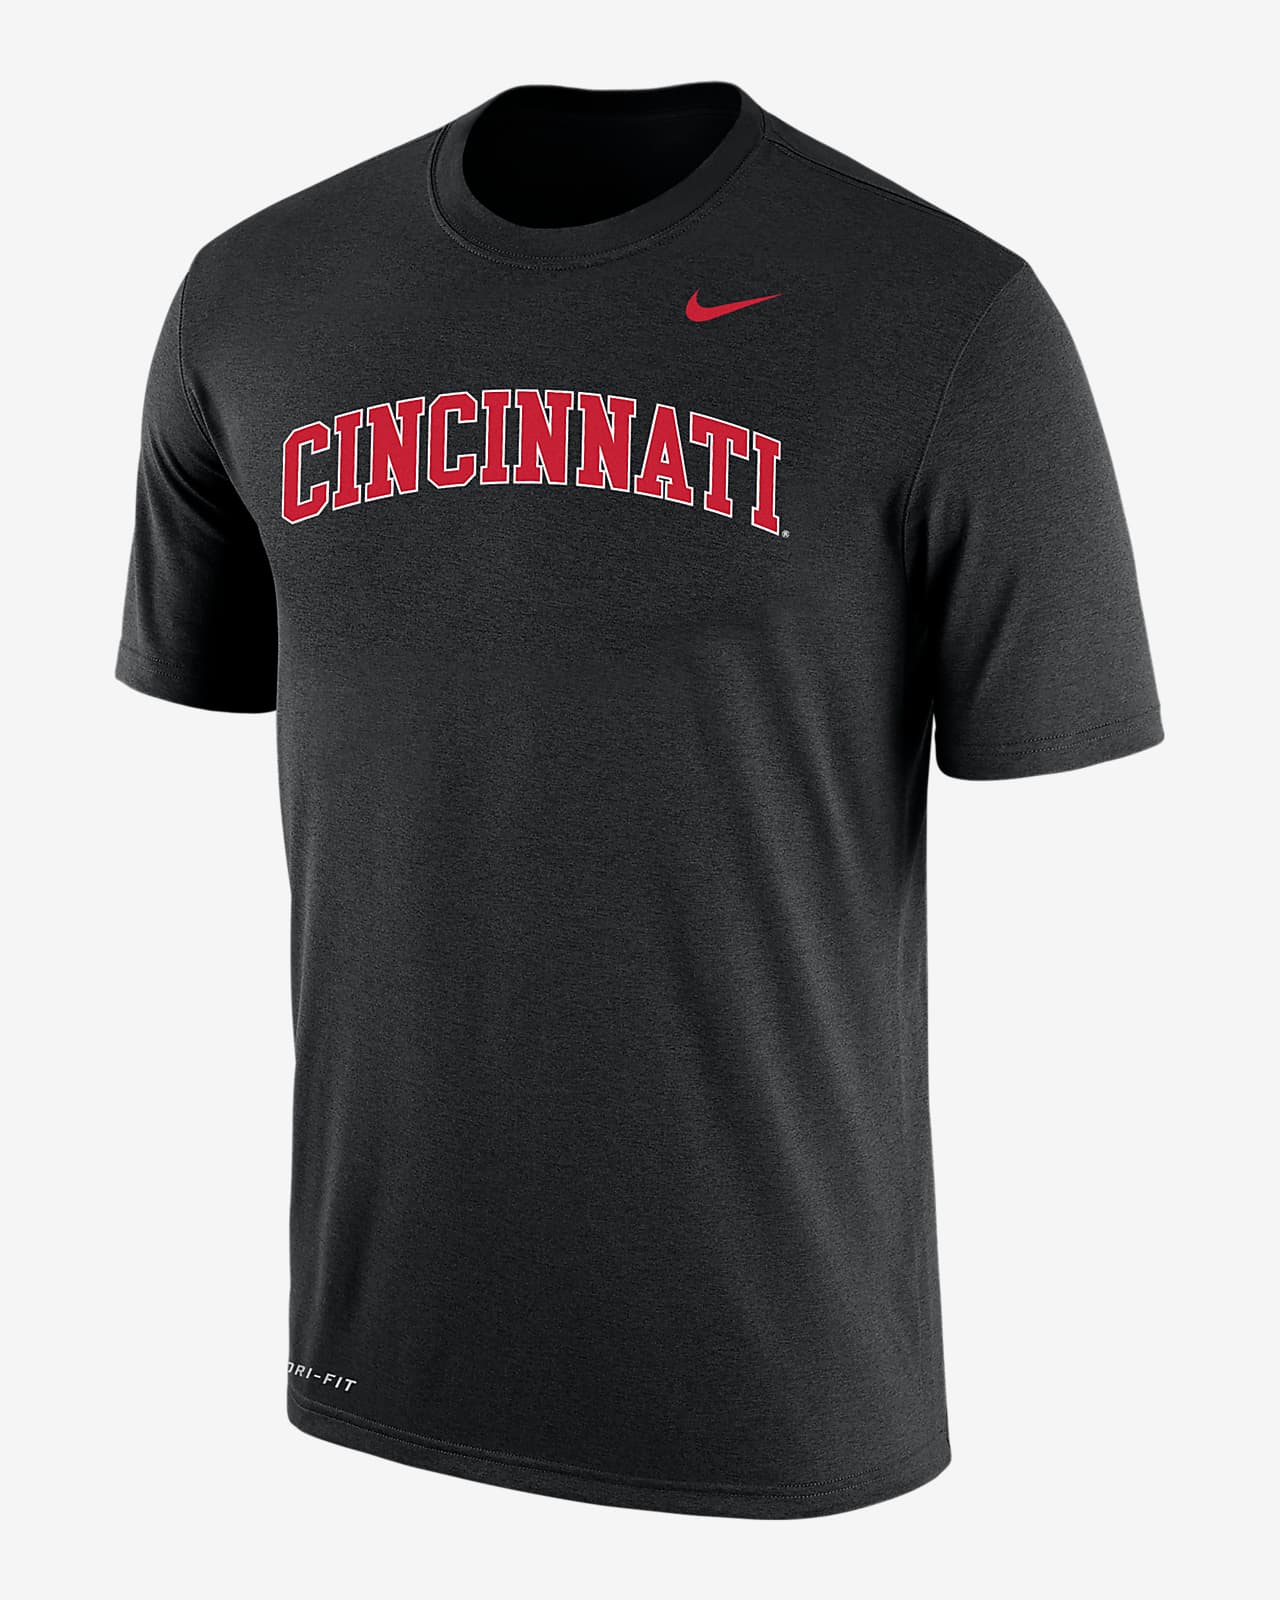 Cincinnati Men's Nike Dri-FIT T-Shirt